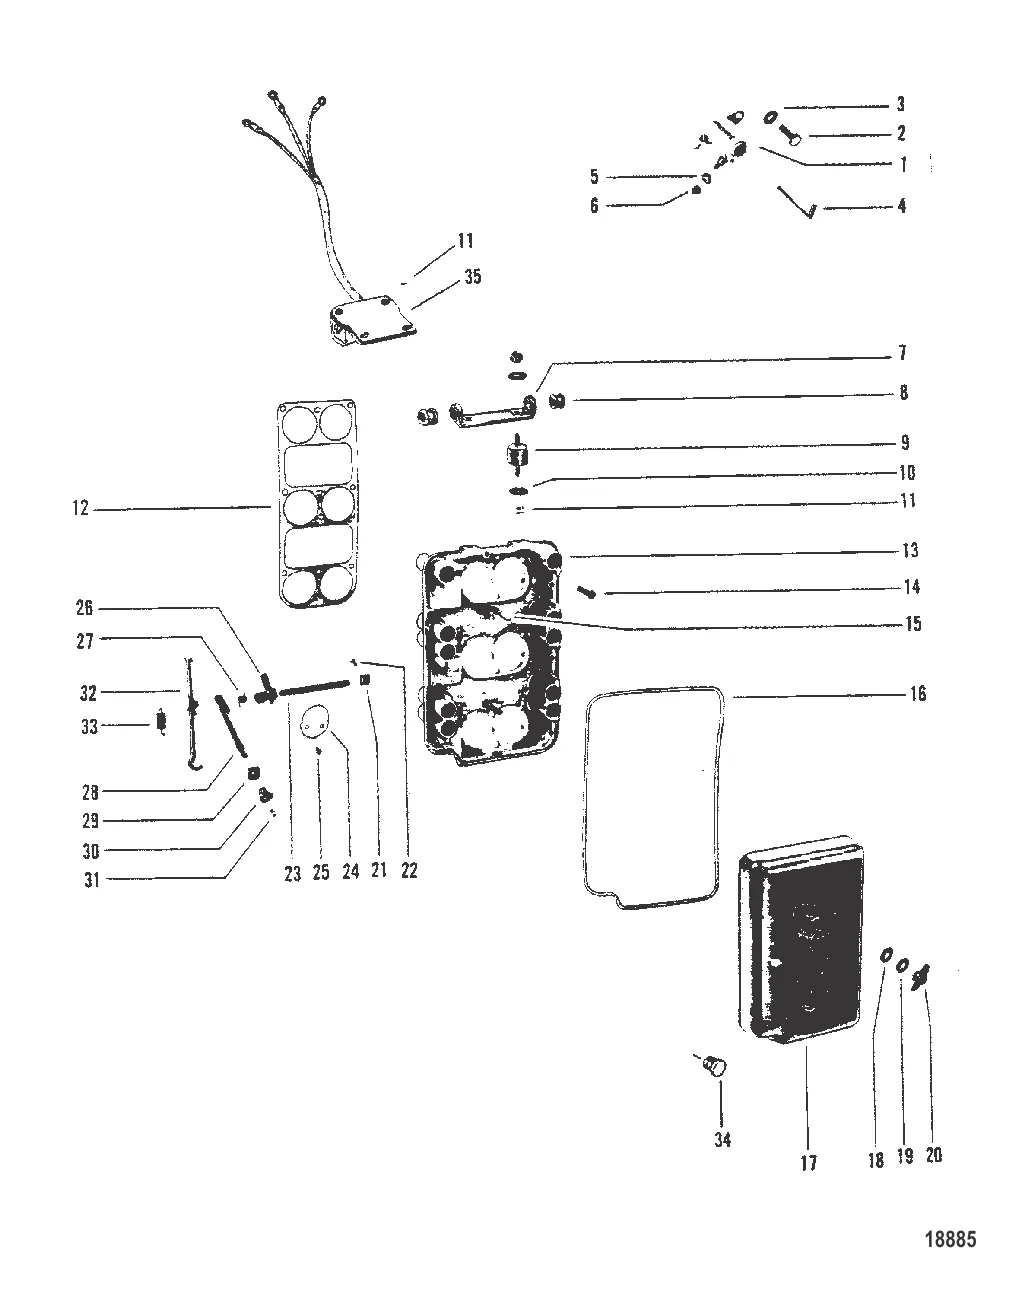 Пластина обогатителя и тяга газа (Конструкция I)